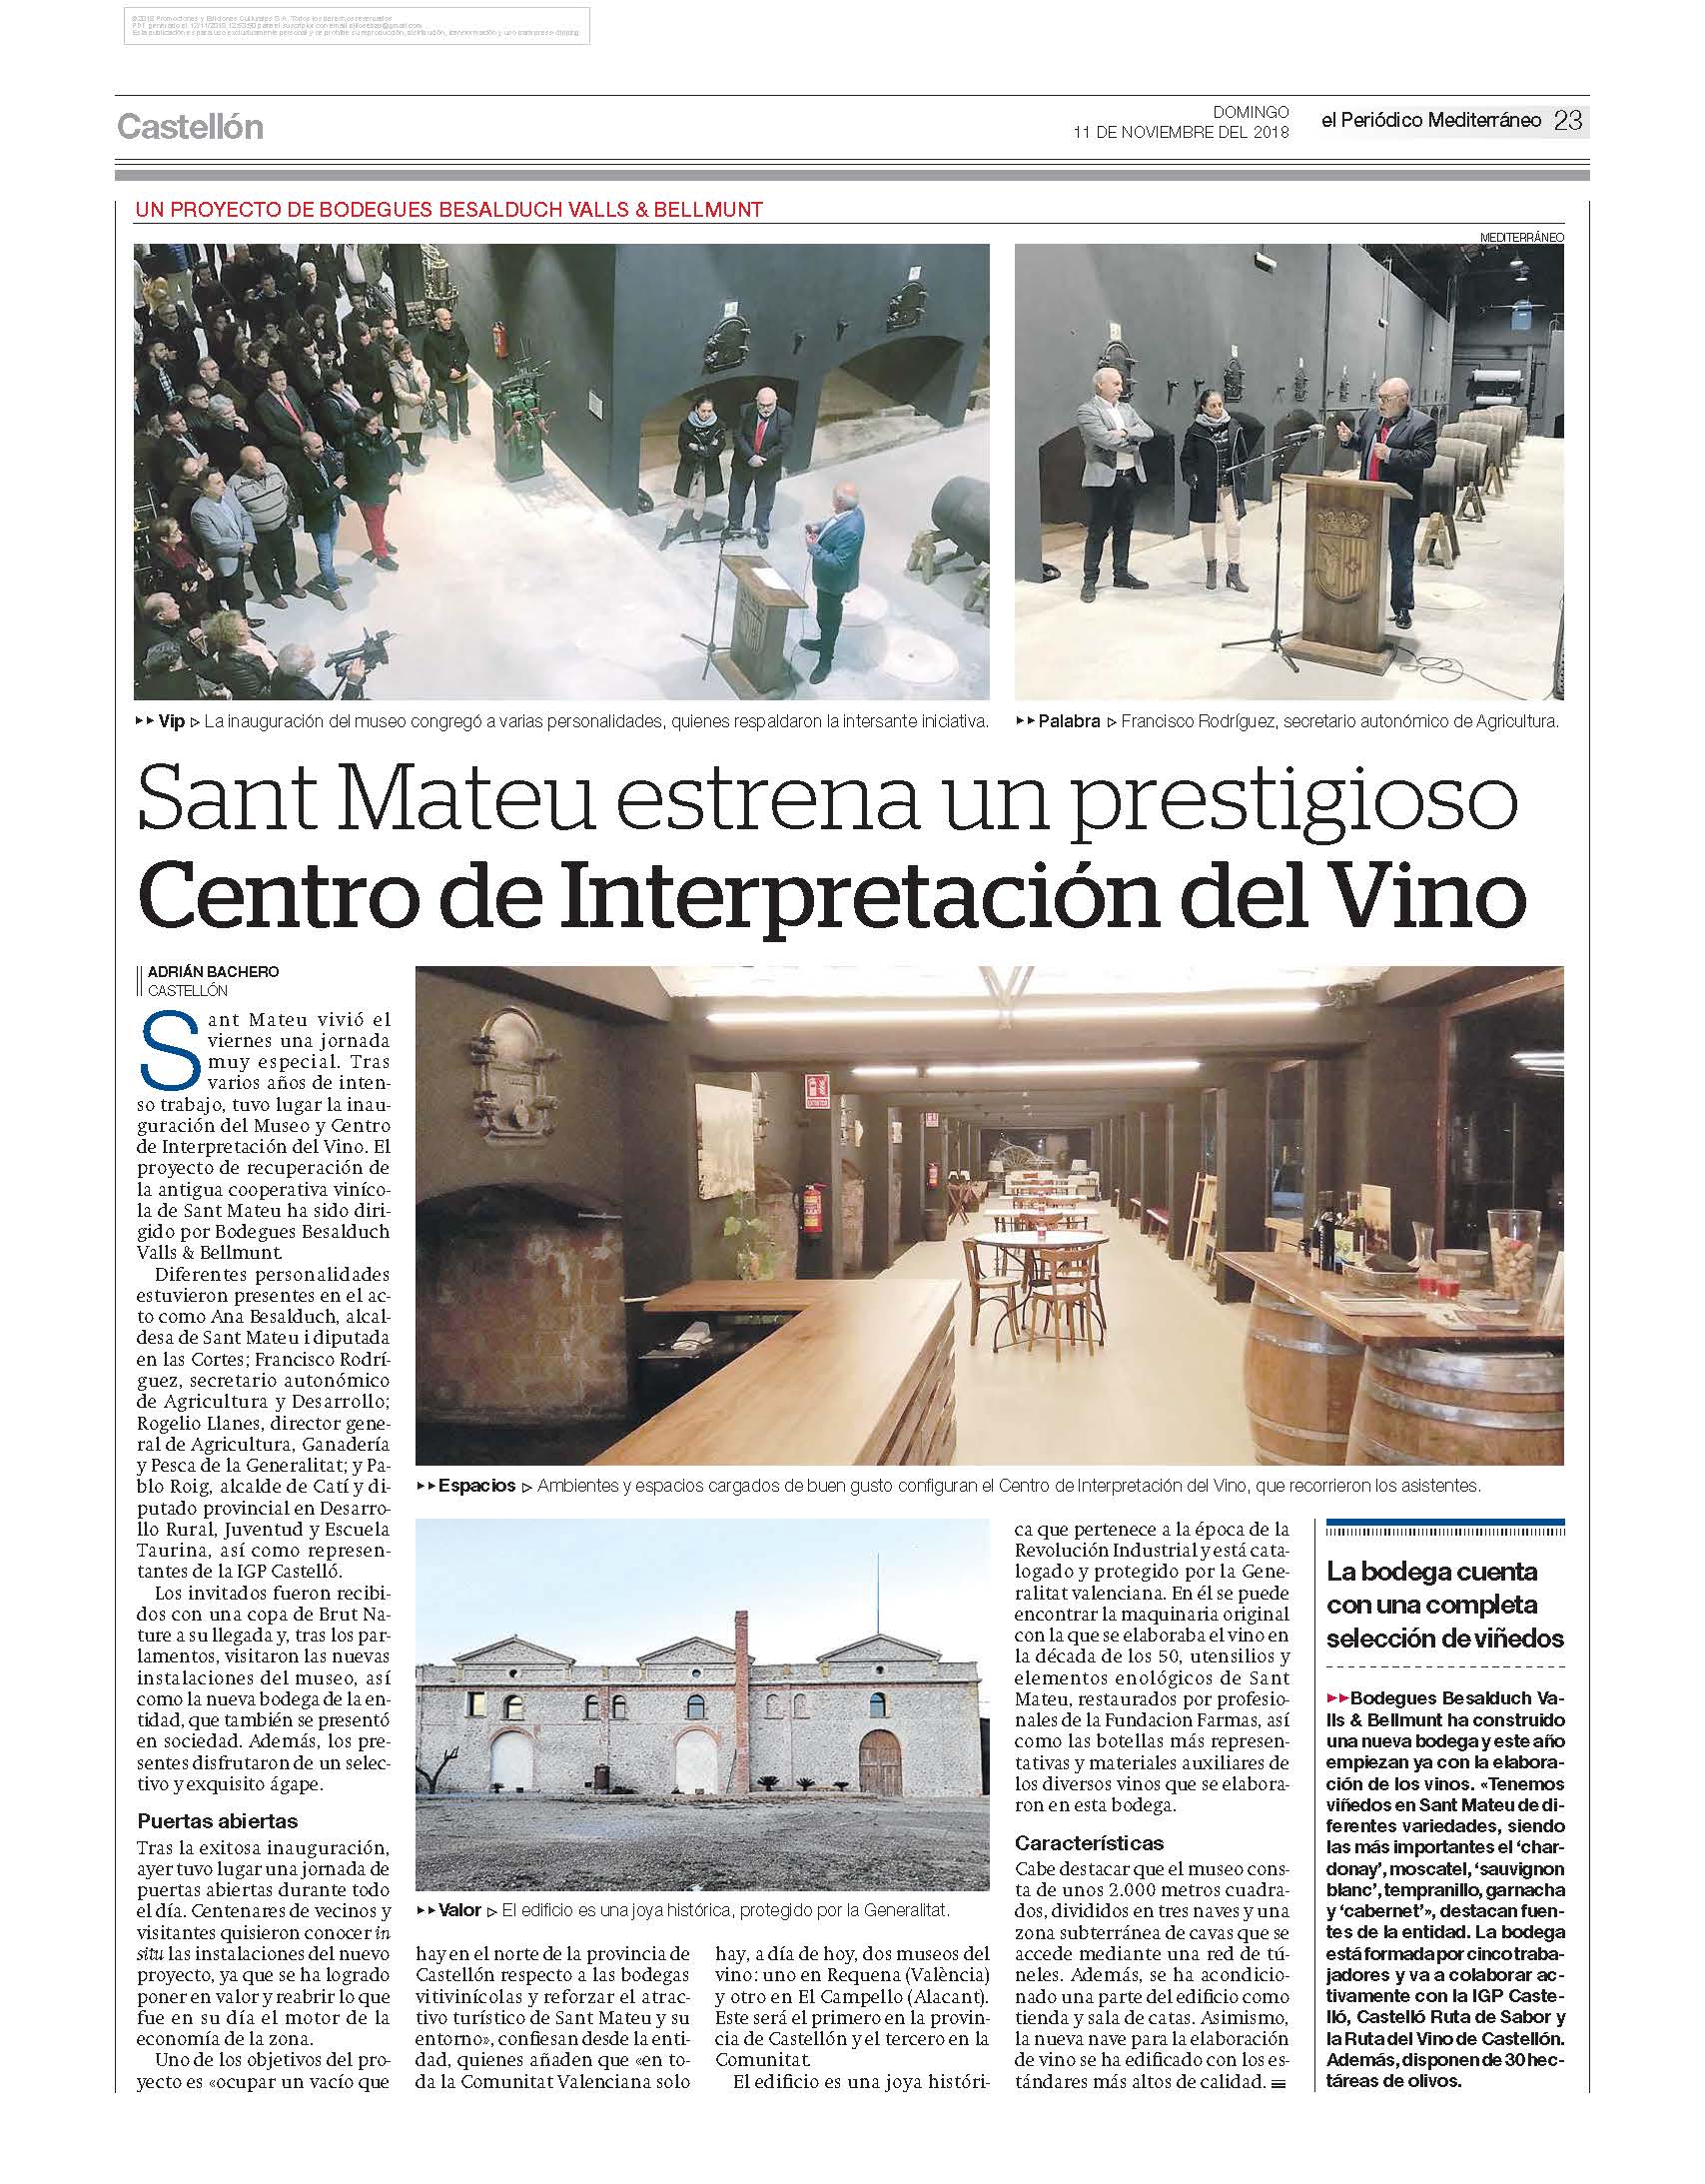 Sant Mateu estrena un prestigioso Centro de Interpretación del Vino